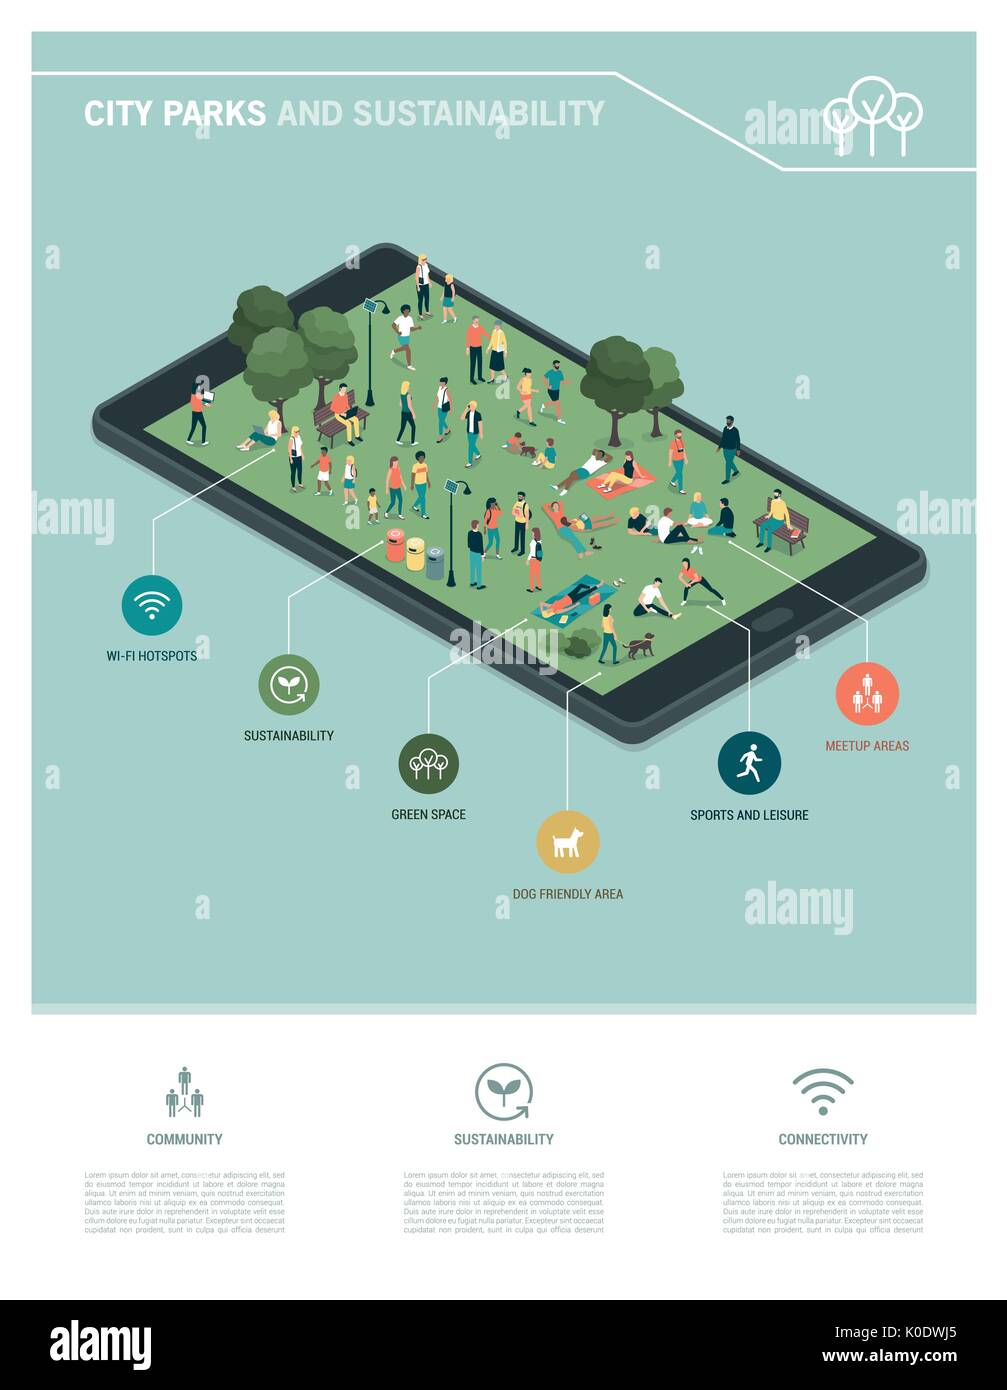 City Park, la sostenibilità e la tecnologia ed infografico: persone insieme rilassante e raccolta nel parco su uno schermo tattile digitale compressa Illustrazione Vettoriale